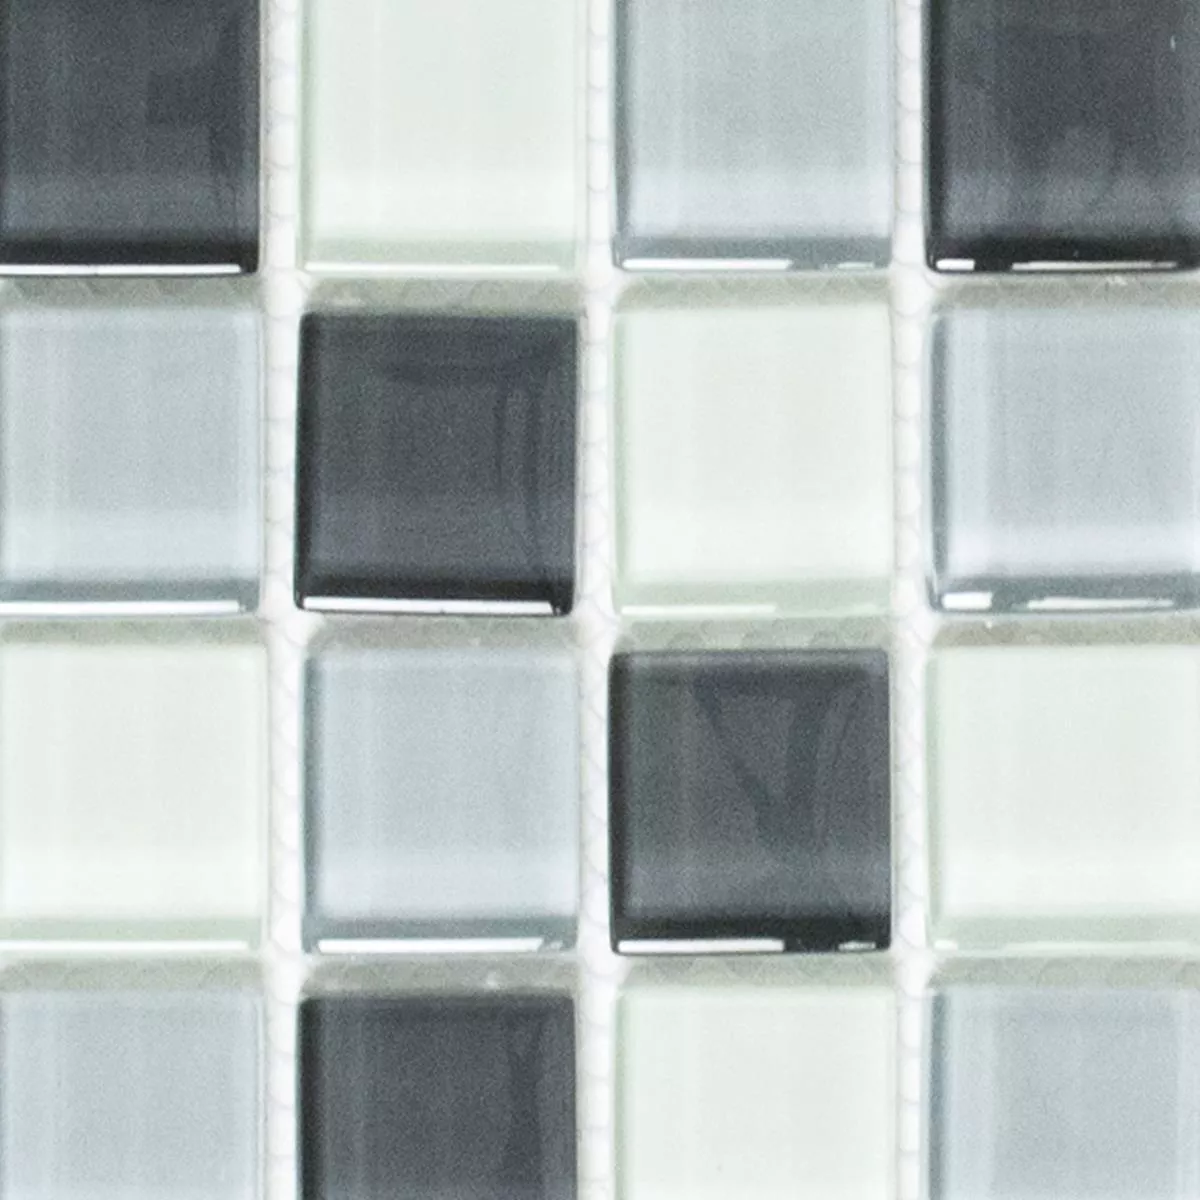 Muster von Glasmosaik Fliesen Alpha Grau Weiß Quadrat 